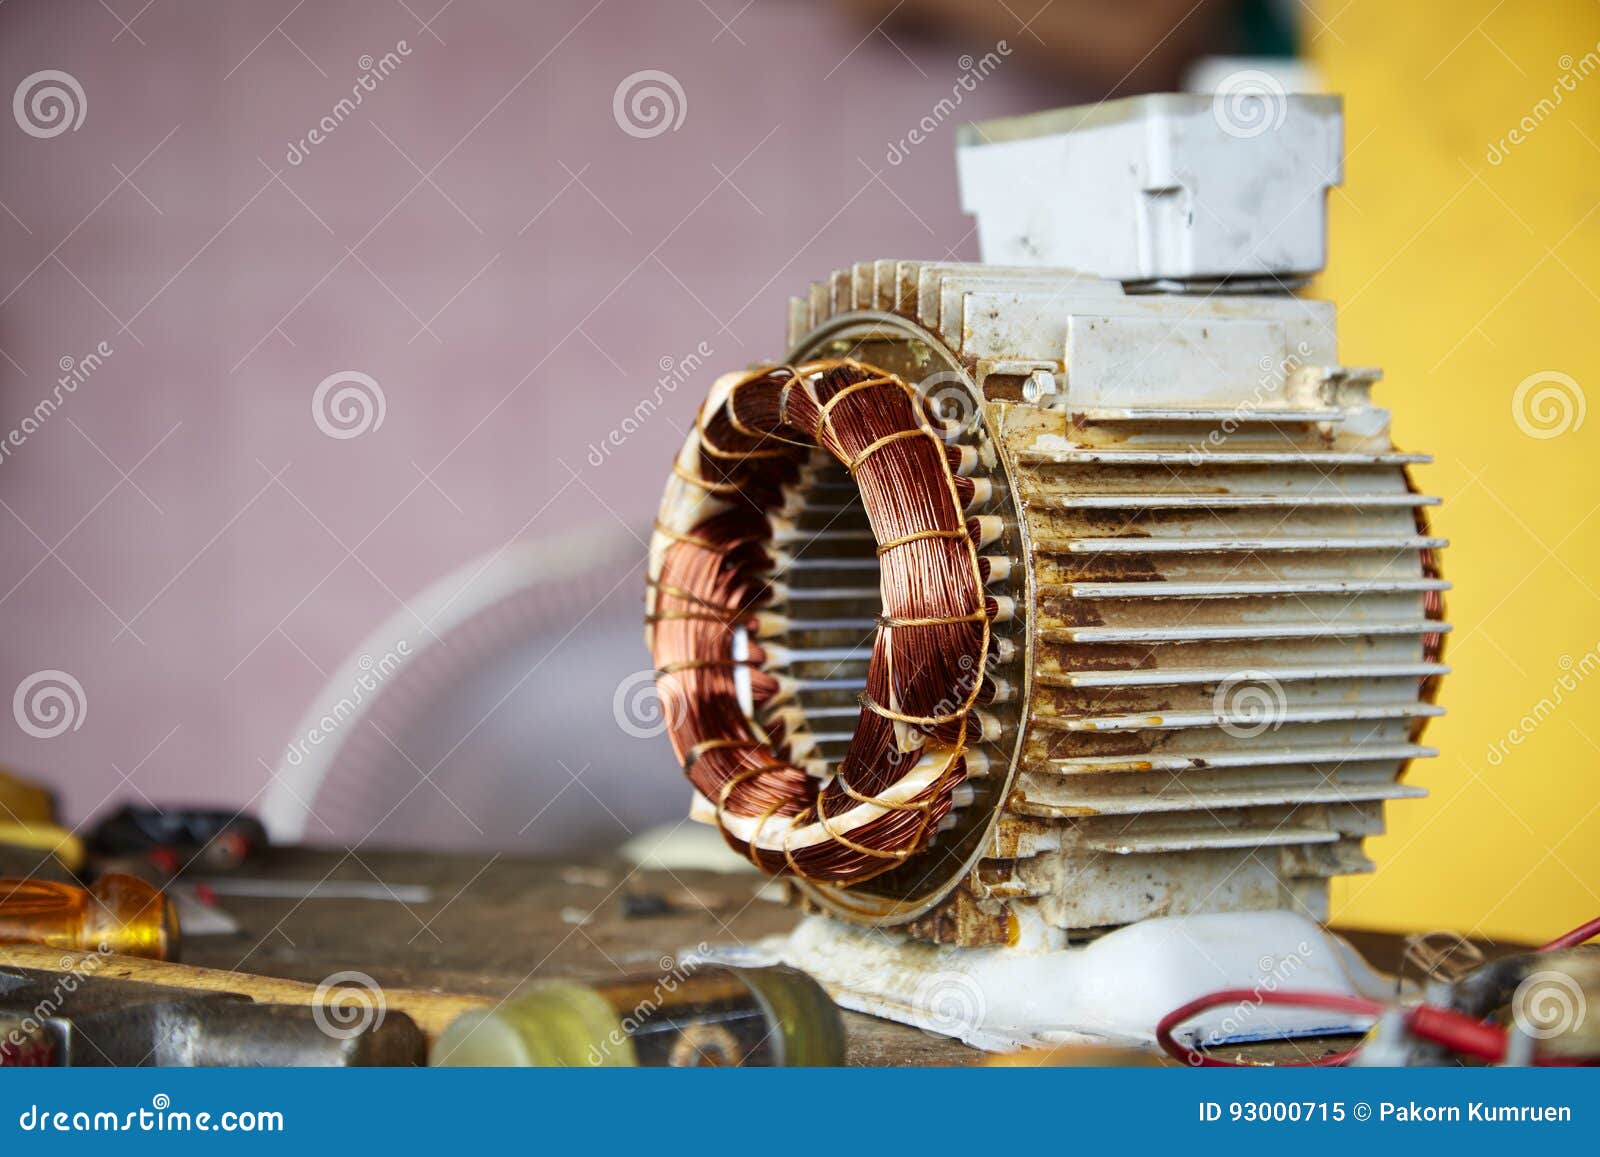 Alter Auseinandergebauter Elektromotor Stockbild - Bild von rückbau,  gebrannt: 93000715